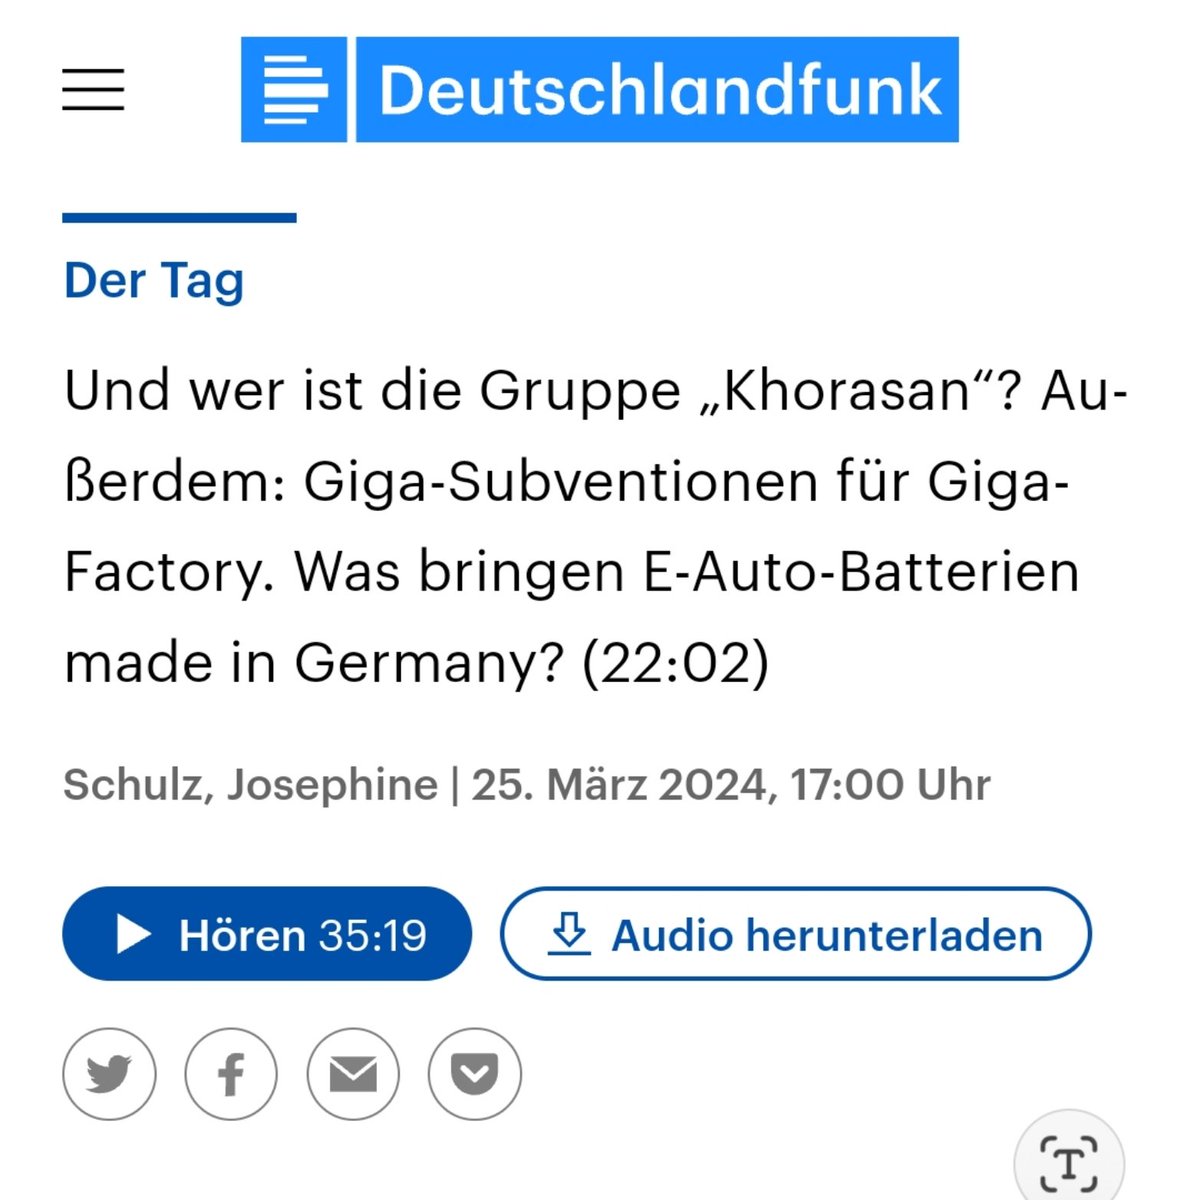 Was bringen E-Auto-Batterien made in Germany? Darüber habe ich im @DLF Podcast 'Der Tag' mit Josephine Schulz gesprochen. Anlass war der Baubeginns der Batteriezellenfabrik des schwedischen Unternehmens #Northvolt in #Heide. Ab 22:03 in der Dlf Audiothek share.deutschlandradio.de/dlf-audiothek-…